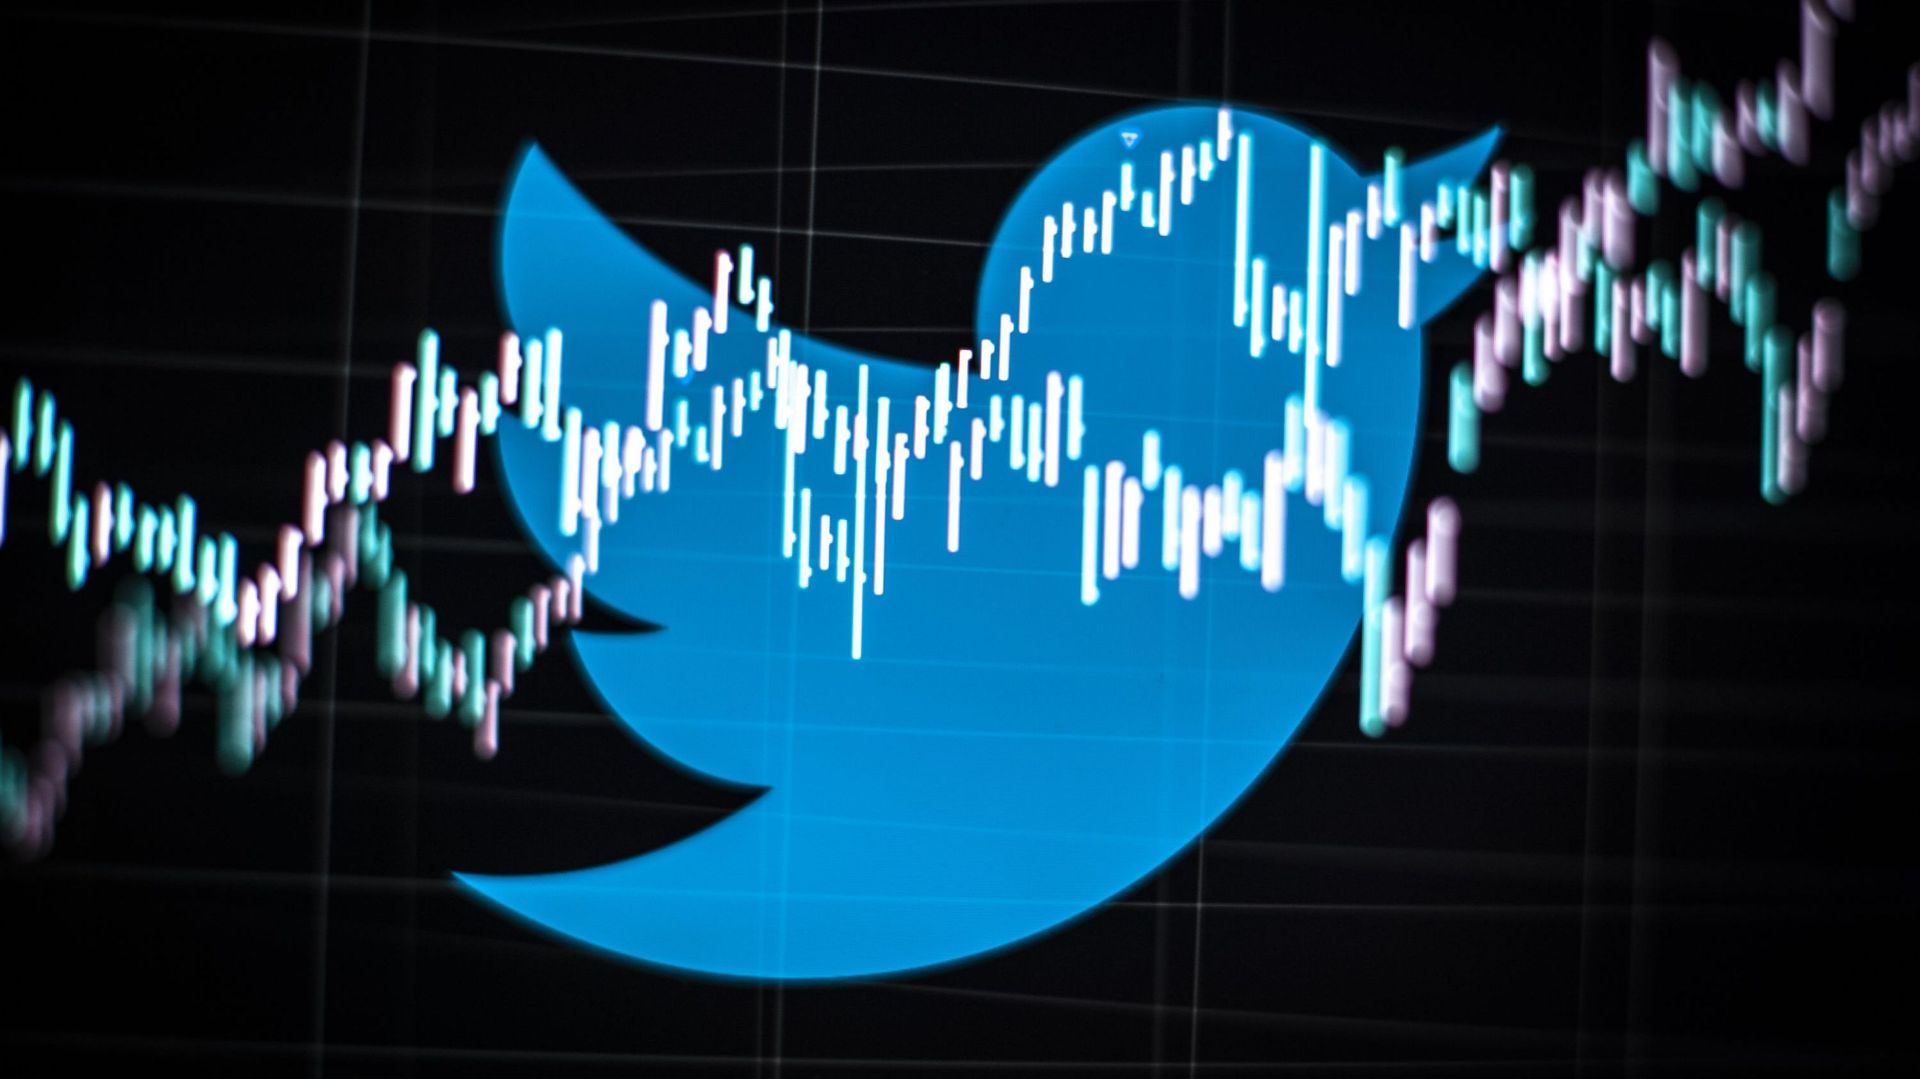 Les comptes concernés auraient généré plus de 10 millions de tweets